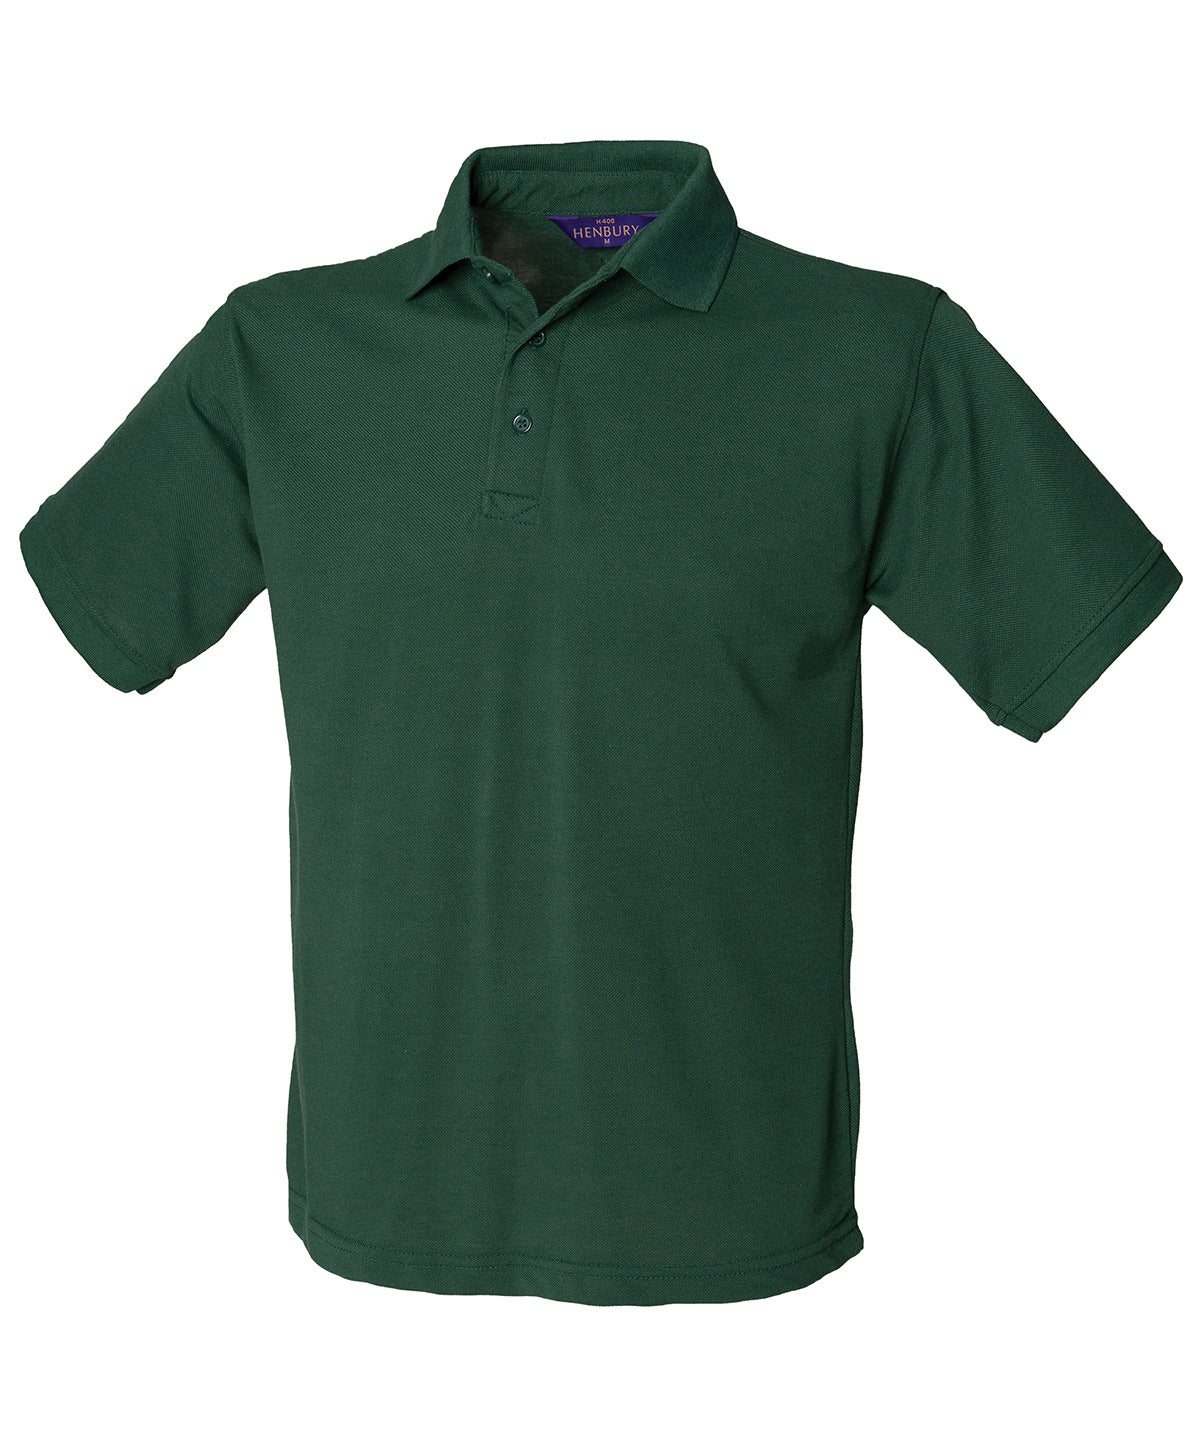 Personalised Polo Shirts - Black Henbury 65/35 Classic piqué polo shirt